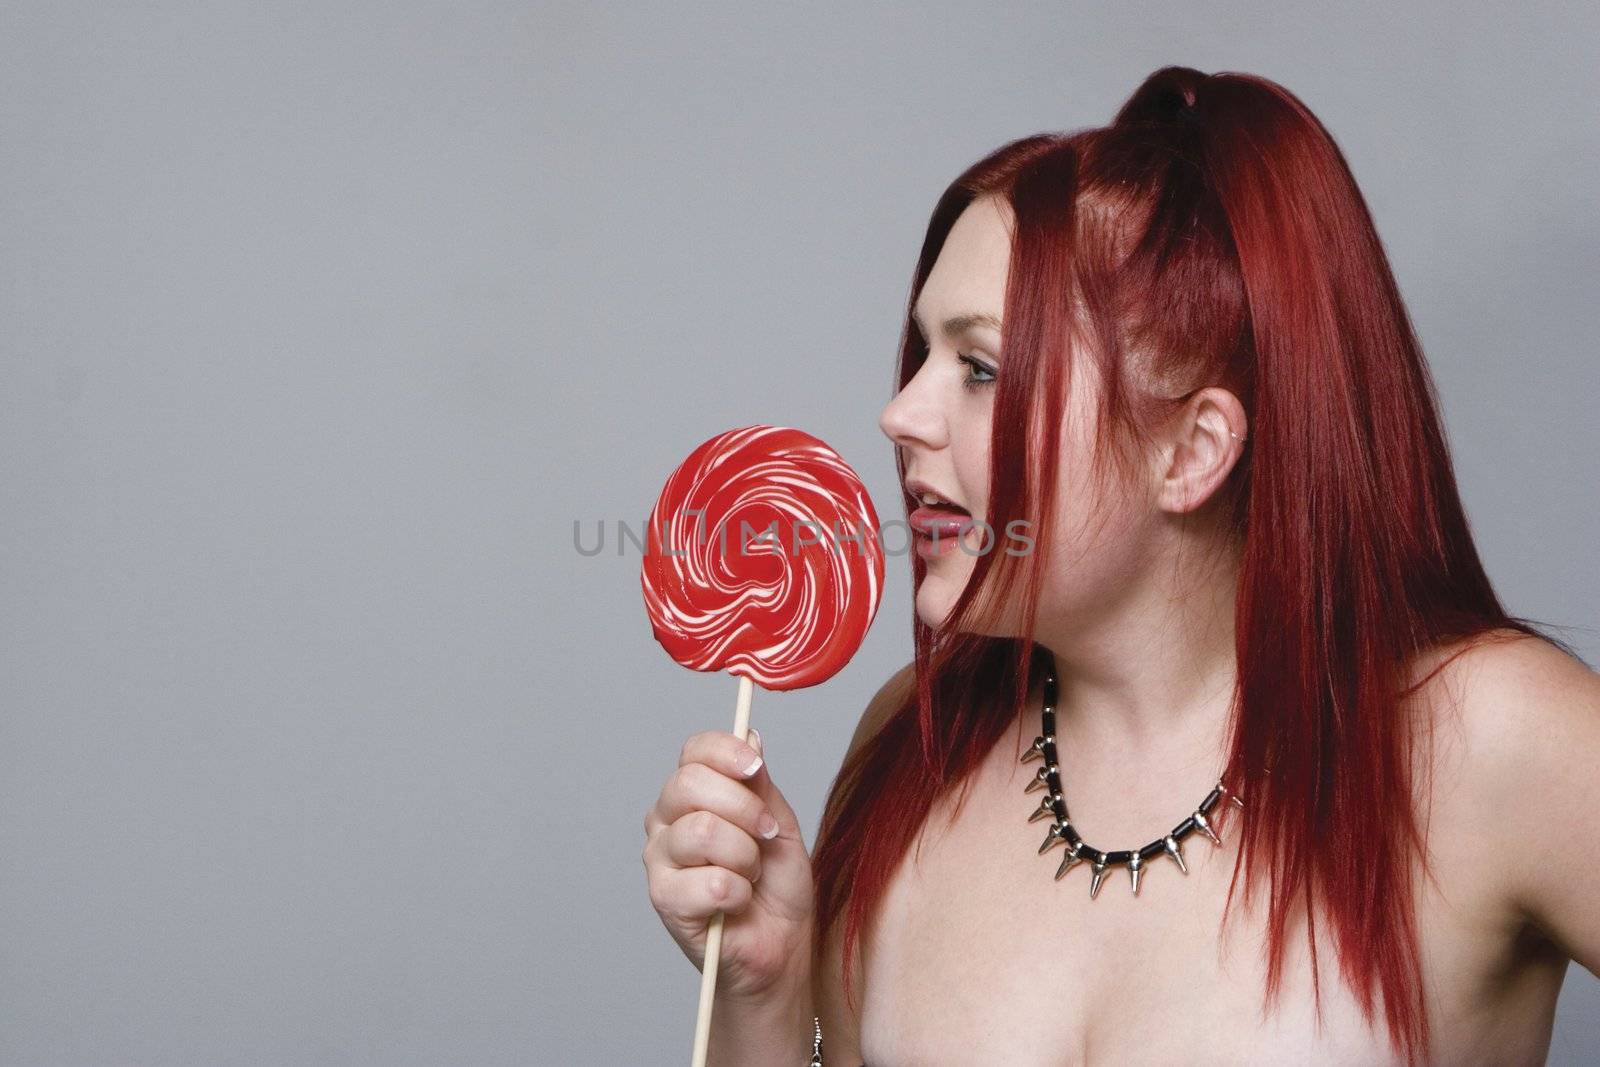 Goth rock red hair chick - lollipop by mypstudio